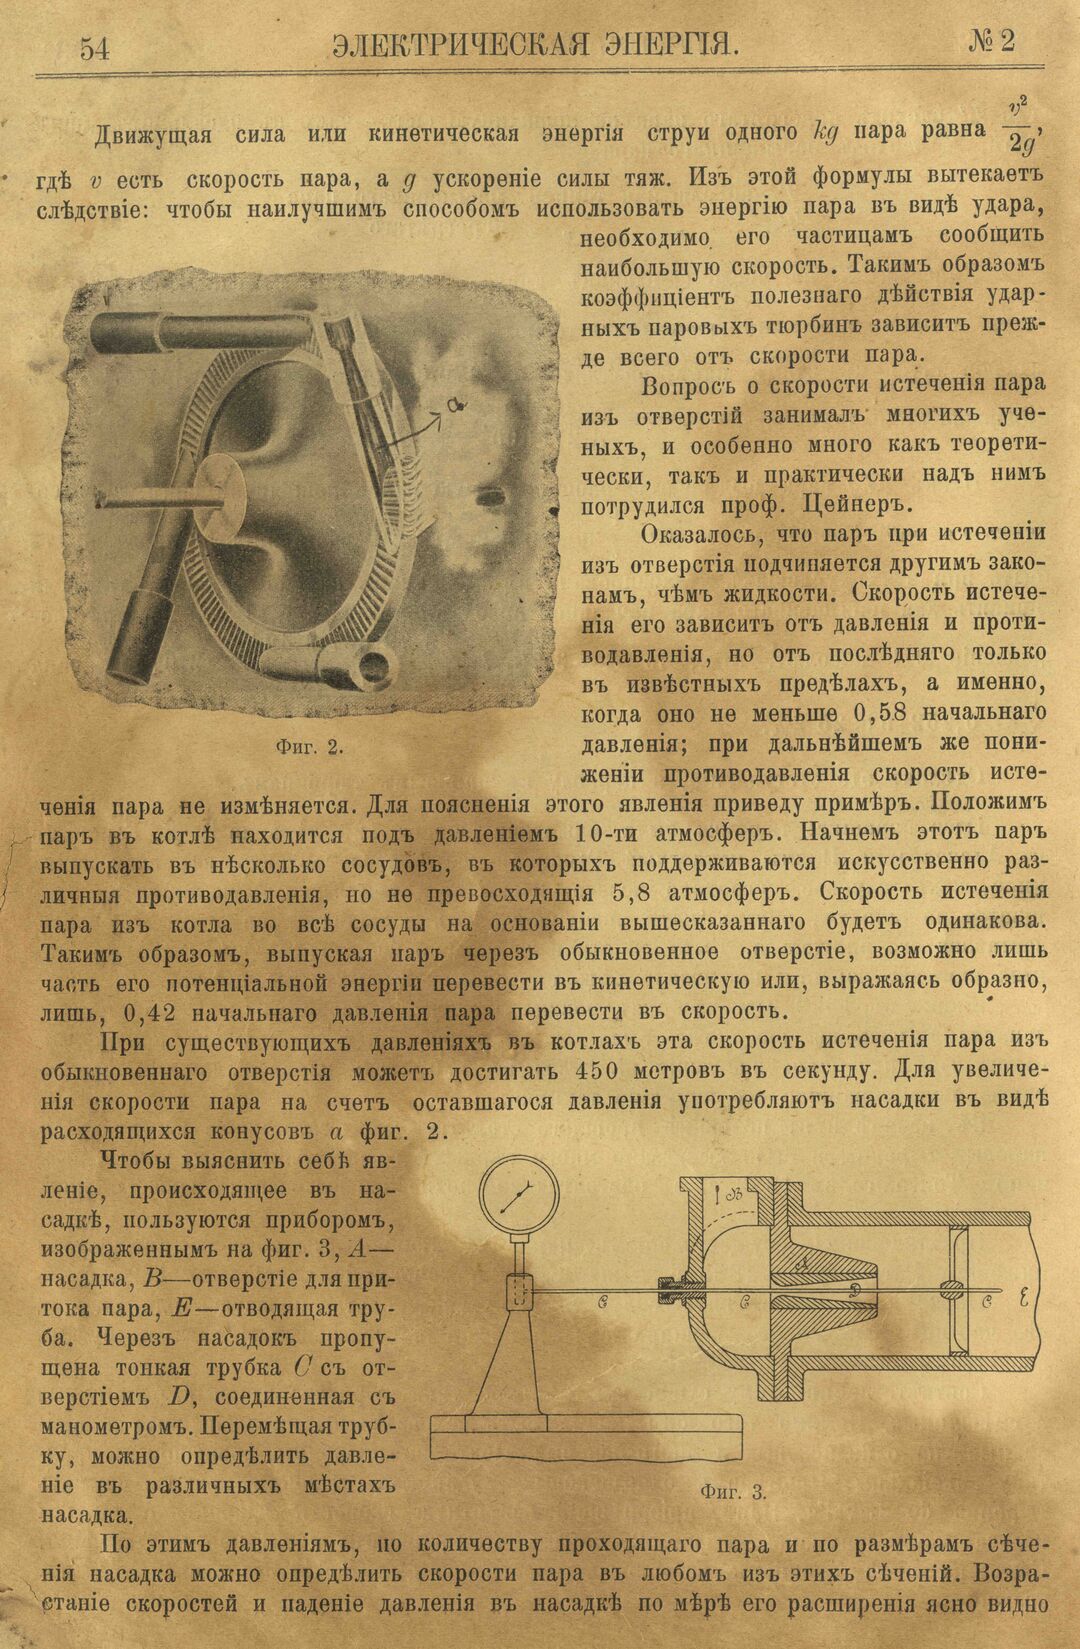 Рис. 1. Журнал Электрическая Энергiя, 2 номер, февраль, 1904 года, страница 54